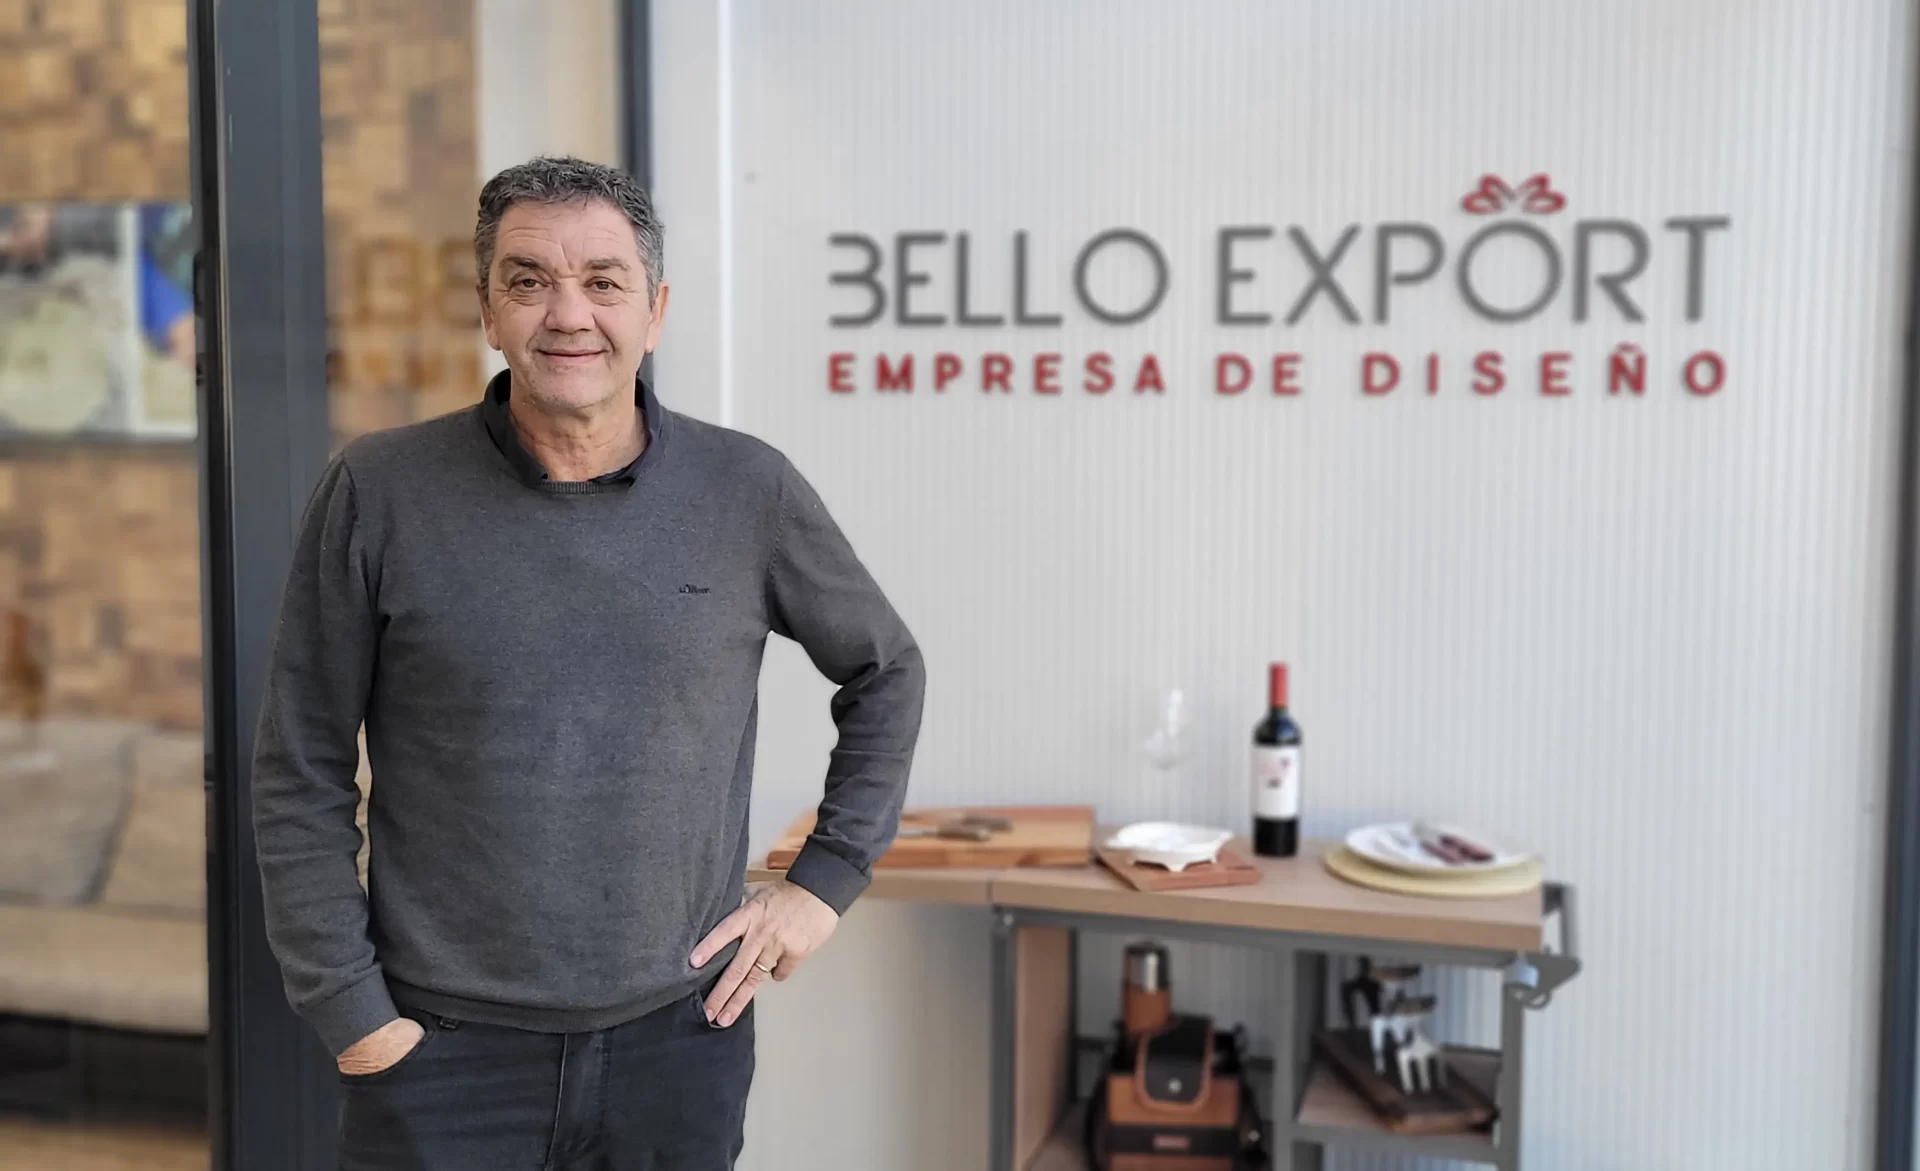 Fernando Bello Bello Export